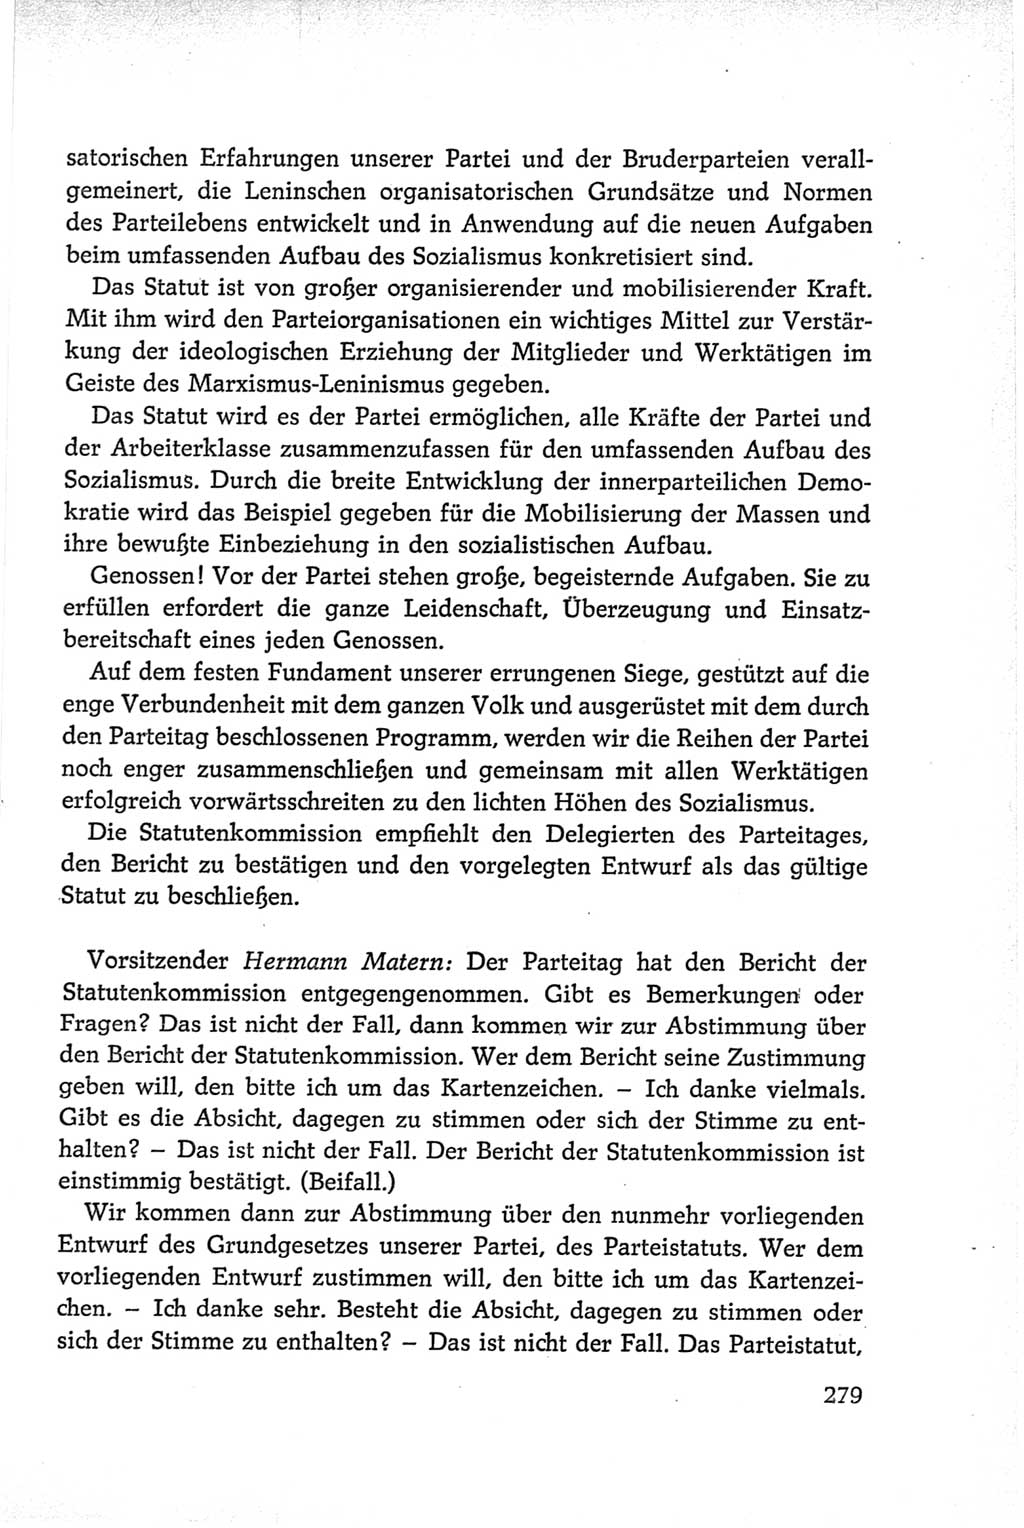 Protokoll der Verhandlungen des Ⅵ. Parteitages der Sozialistischen Einheitspartei Deutschlands (SED) [Deutsche Demokratische Republik (DDR)] 1963, Band Ⅱ, Seite 279 (Prot. Verh. Ⅵ. PT SED DDR 1963, Bd. Ⅱ, S. 279)